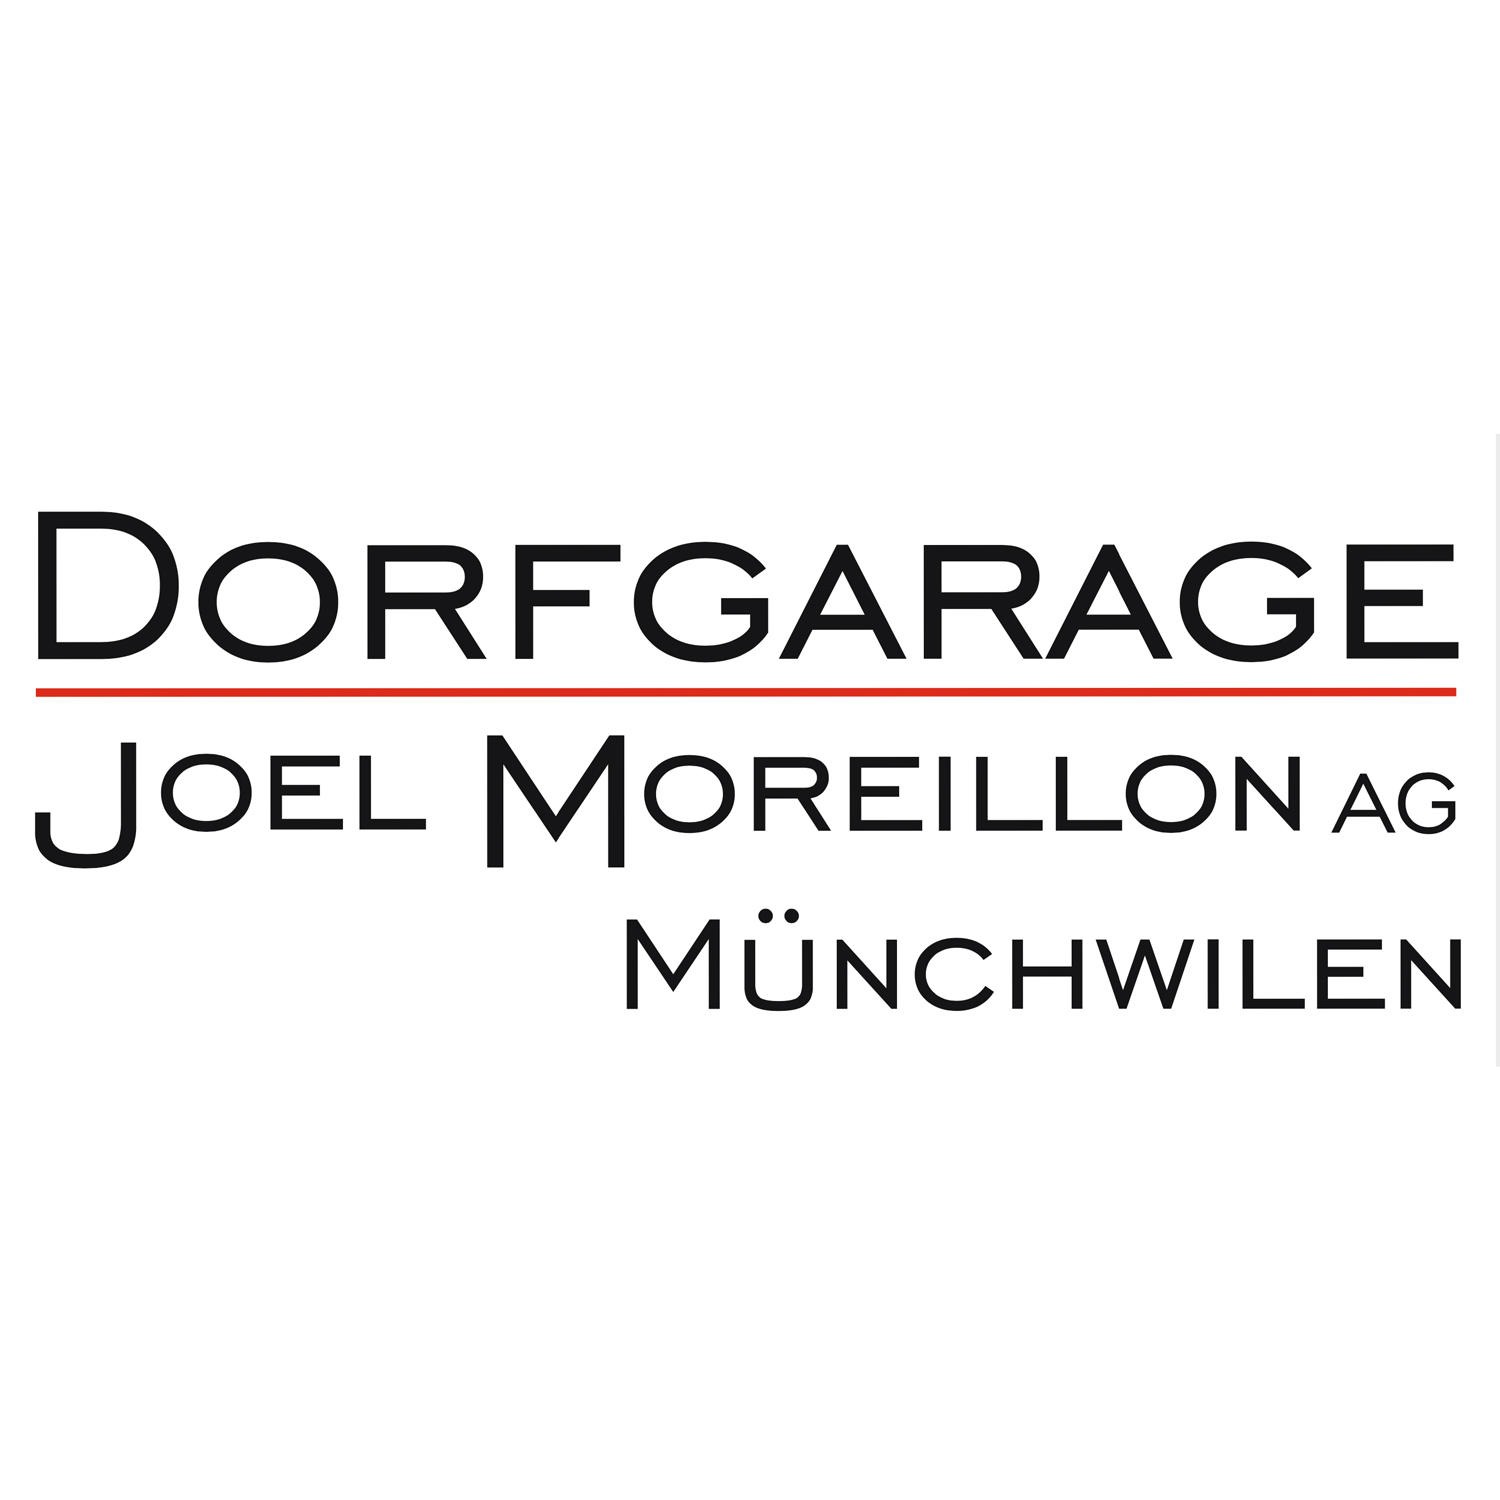 Dorfgarage Joel Moreillon AG Logo